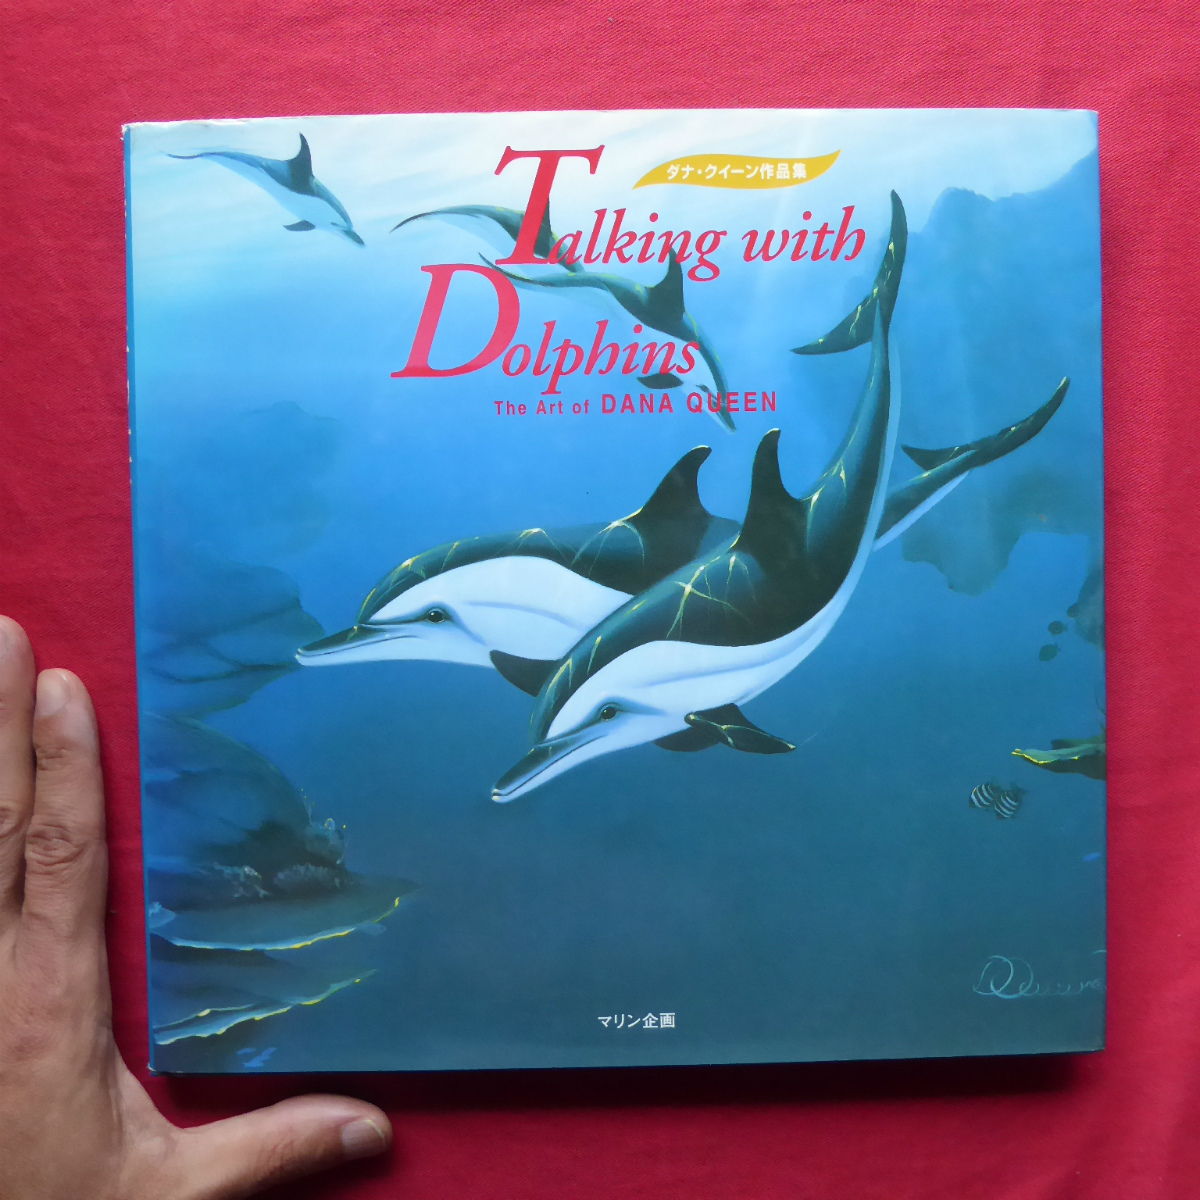 w21 [Colección Dana Queen/Planificación marina/1995] Amados delfines/Un artista que alaba la naturaleza, Cuadro, Libro de arte, Recopilación, Catalogar